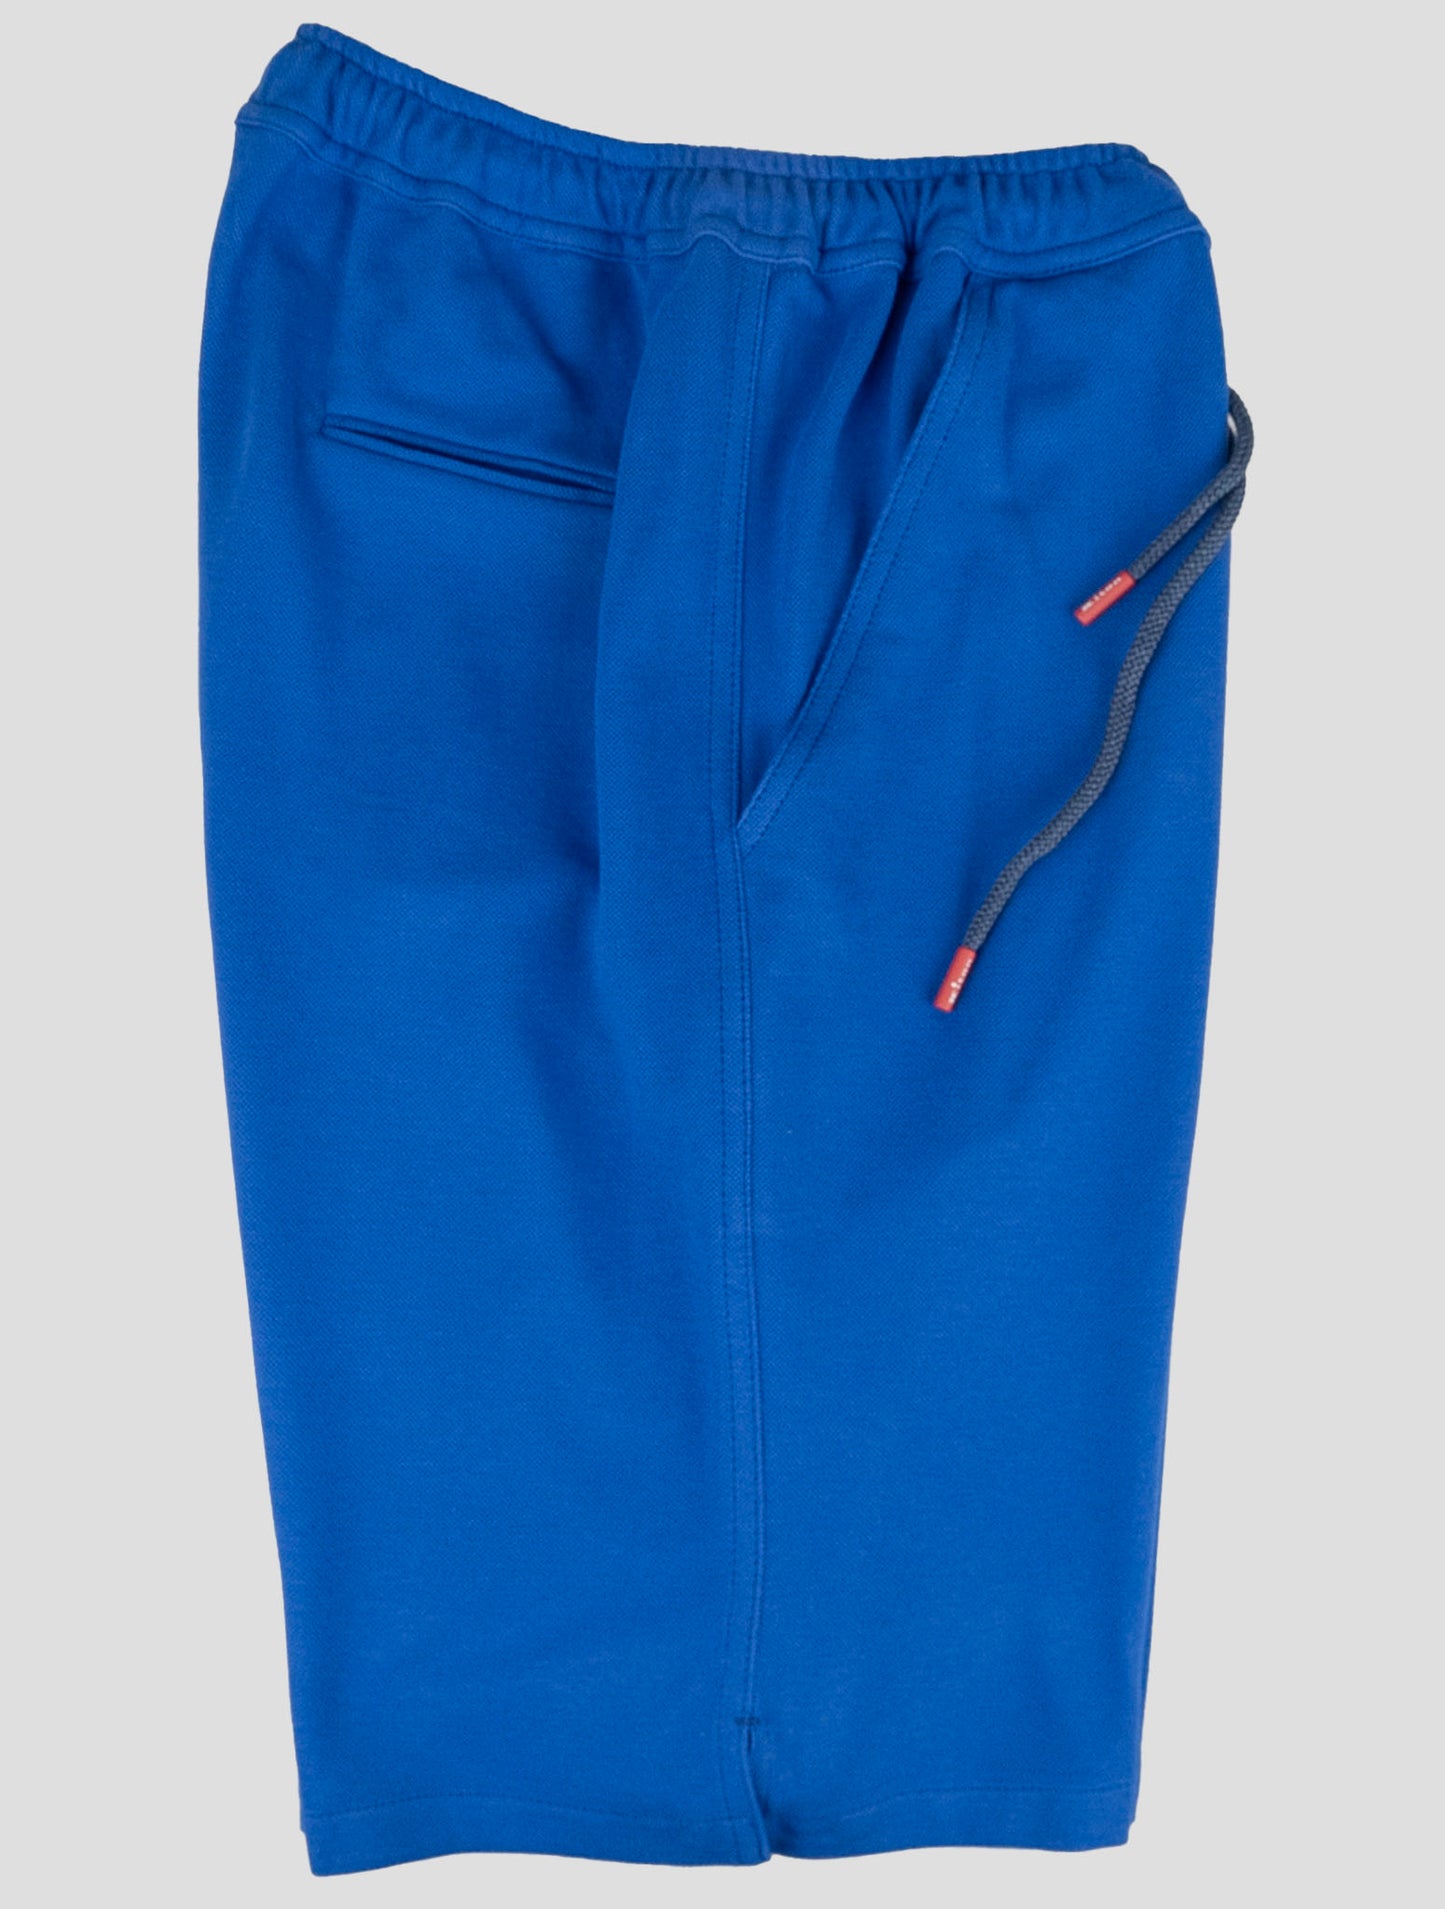 Traje a juego Kiton-Gris Mariano y azul pantalones cortos chándal